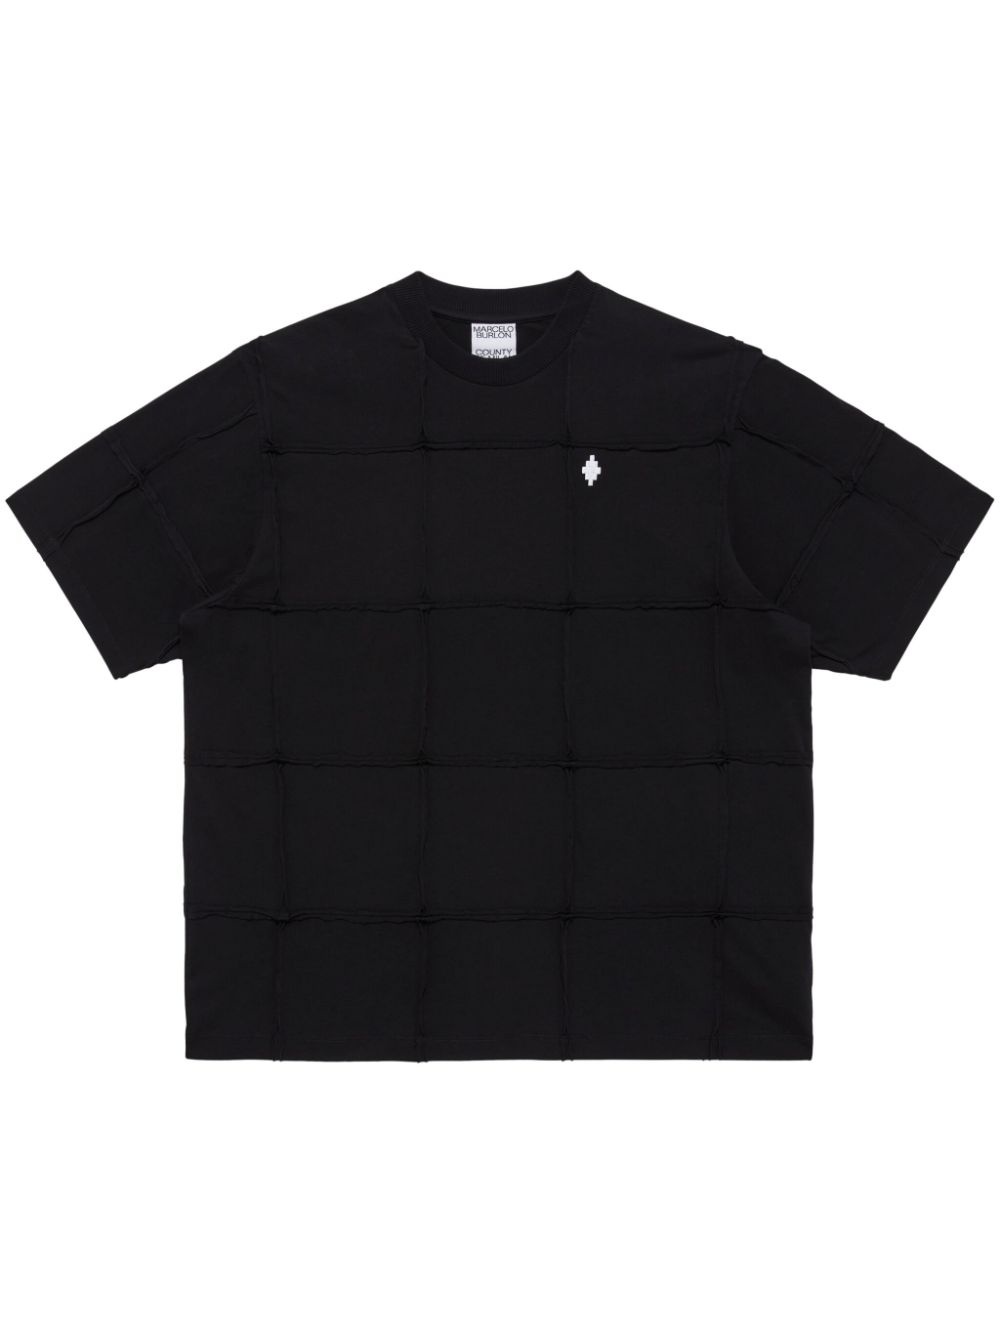 Cross Inside Out T-shirt - 1